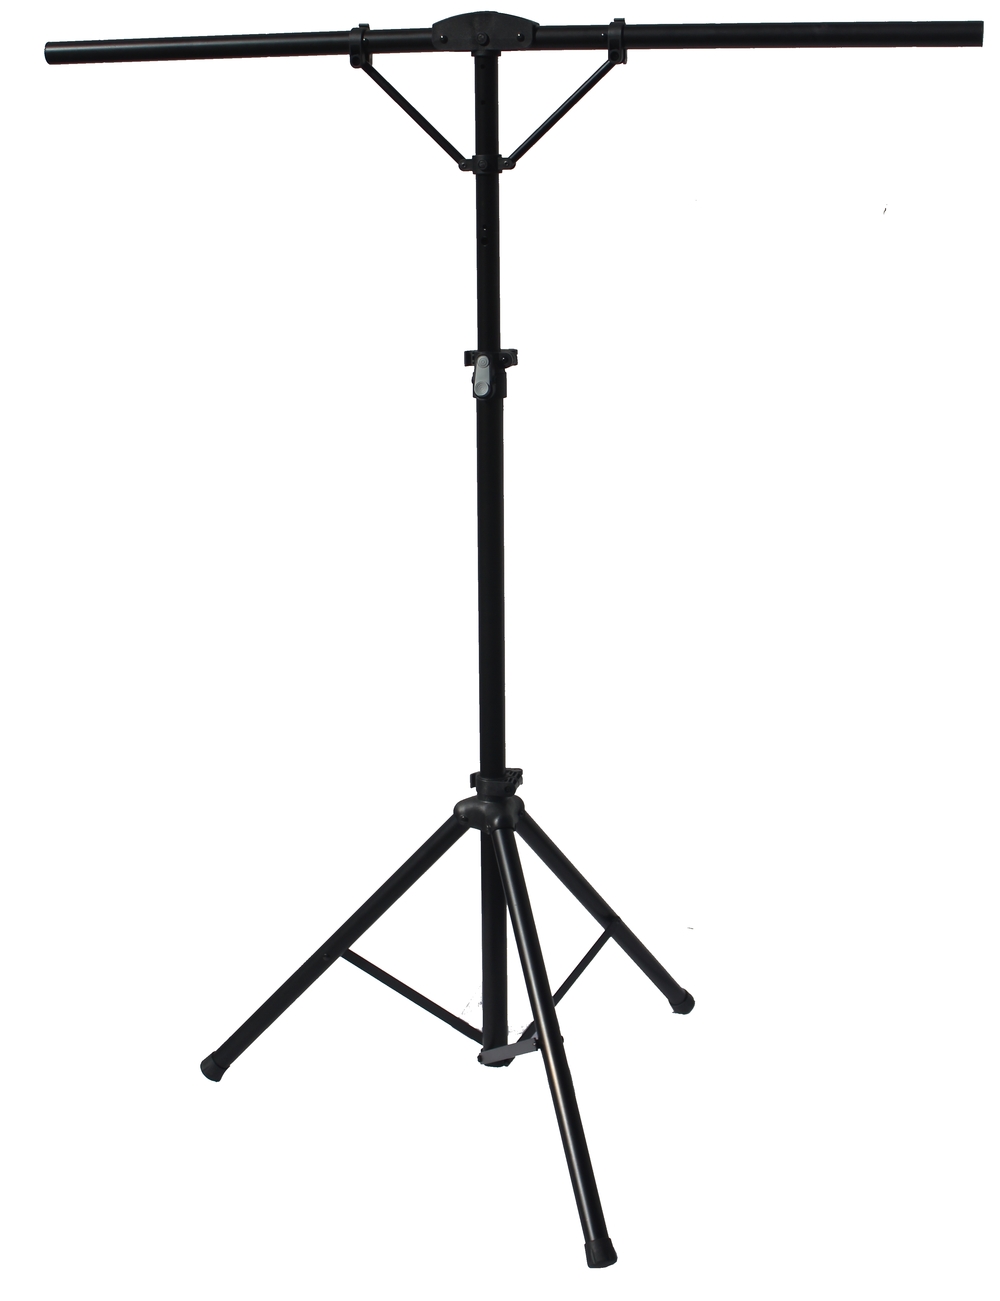 Sprællemand rygrad Fugtighed SL-22 Basic Lighting Stand — Peak Stands-The Best Portable Stands